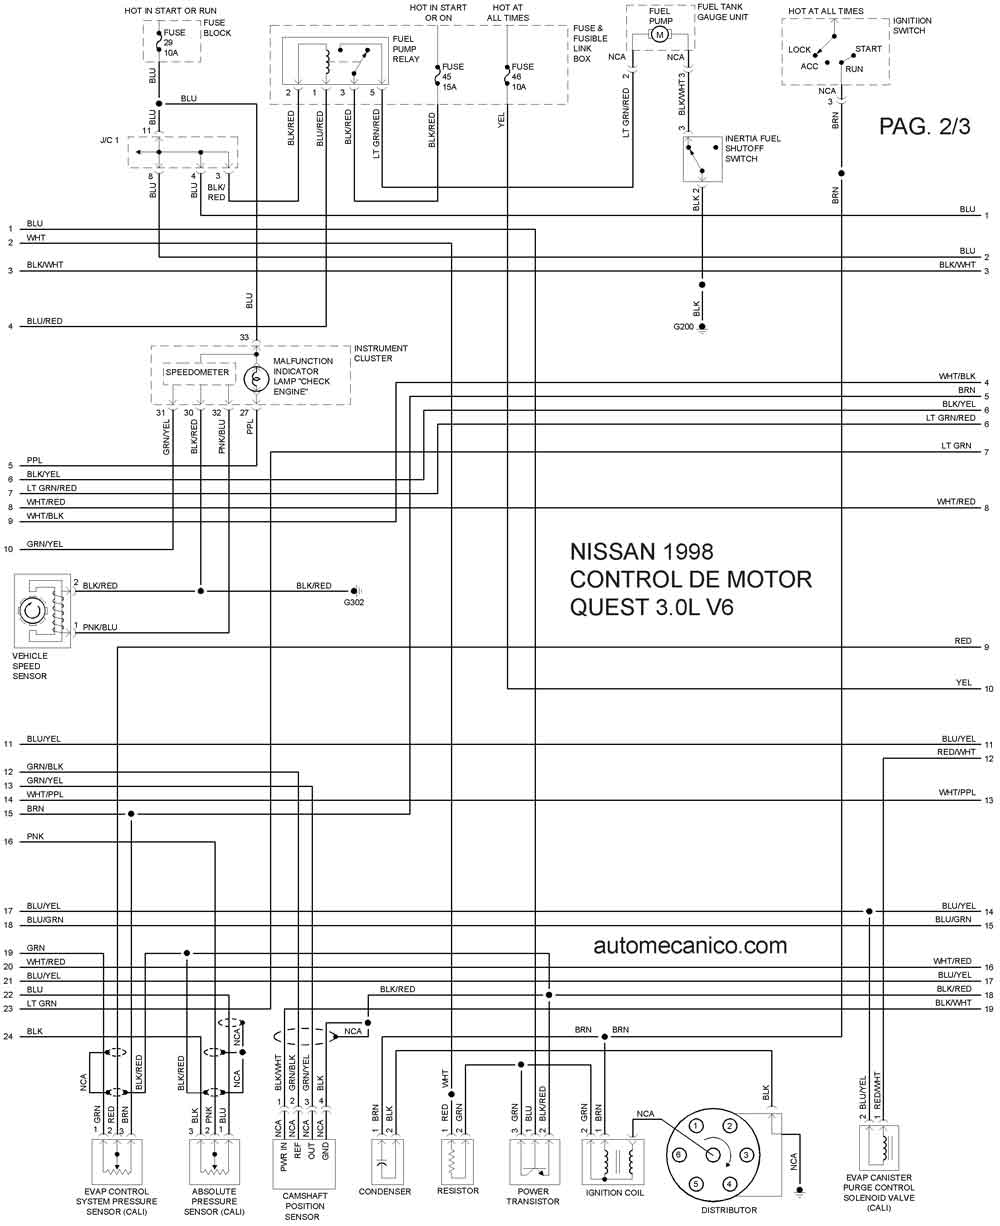 Diagrama electrico automotriz nissan #9